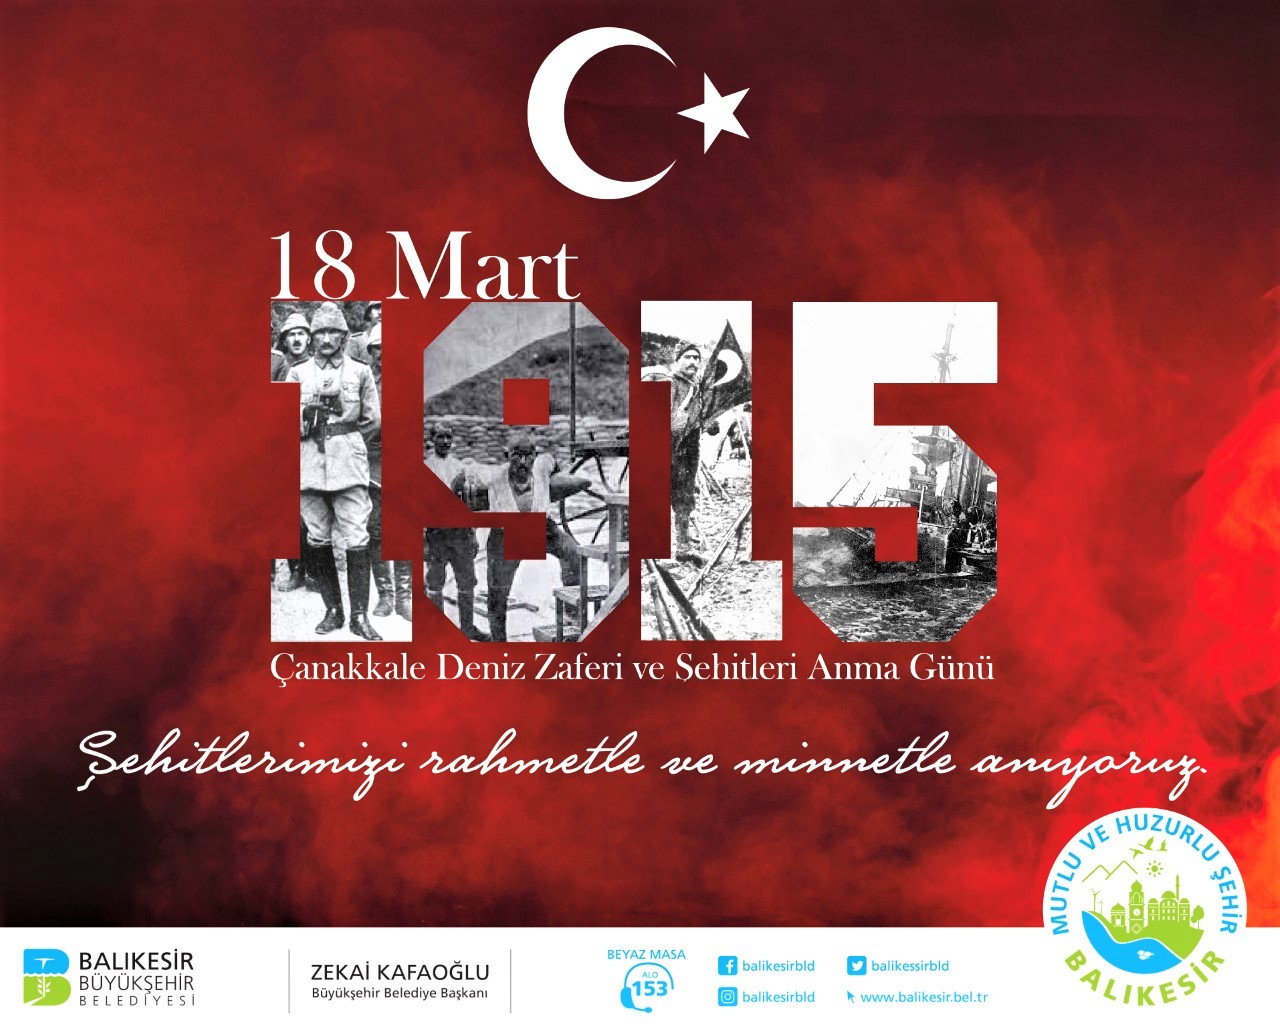 Büyükşehir Belediyemizce verilecek 18 Mart Çanakkale Deniz Zaferi ve Şehitleri Anma Günü